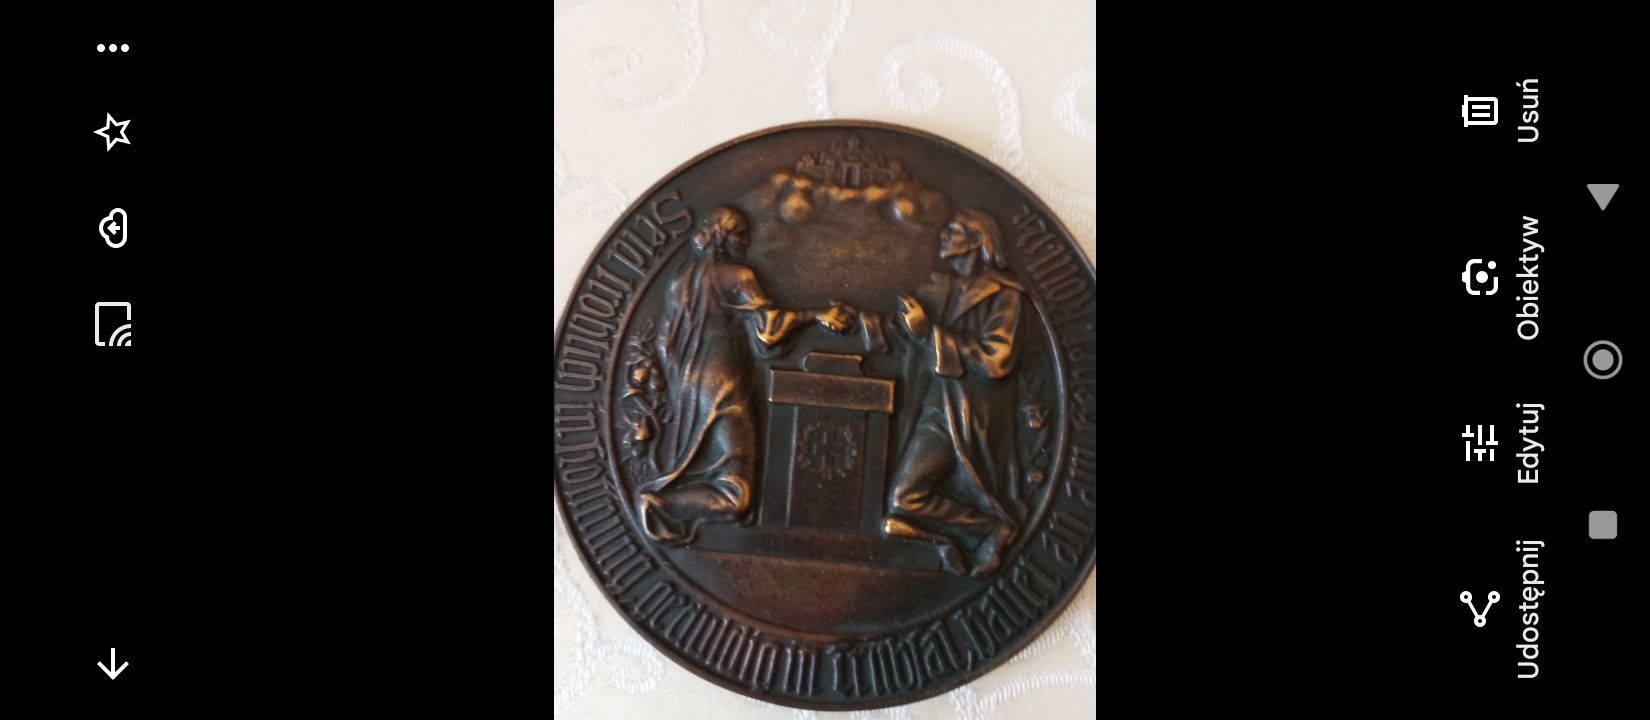 Stary medal z brazu